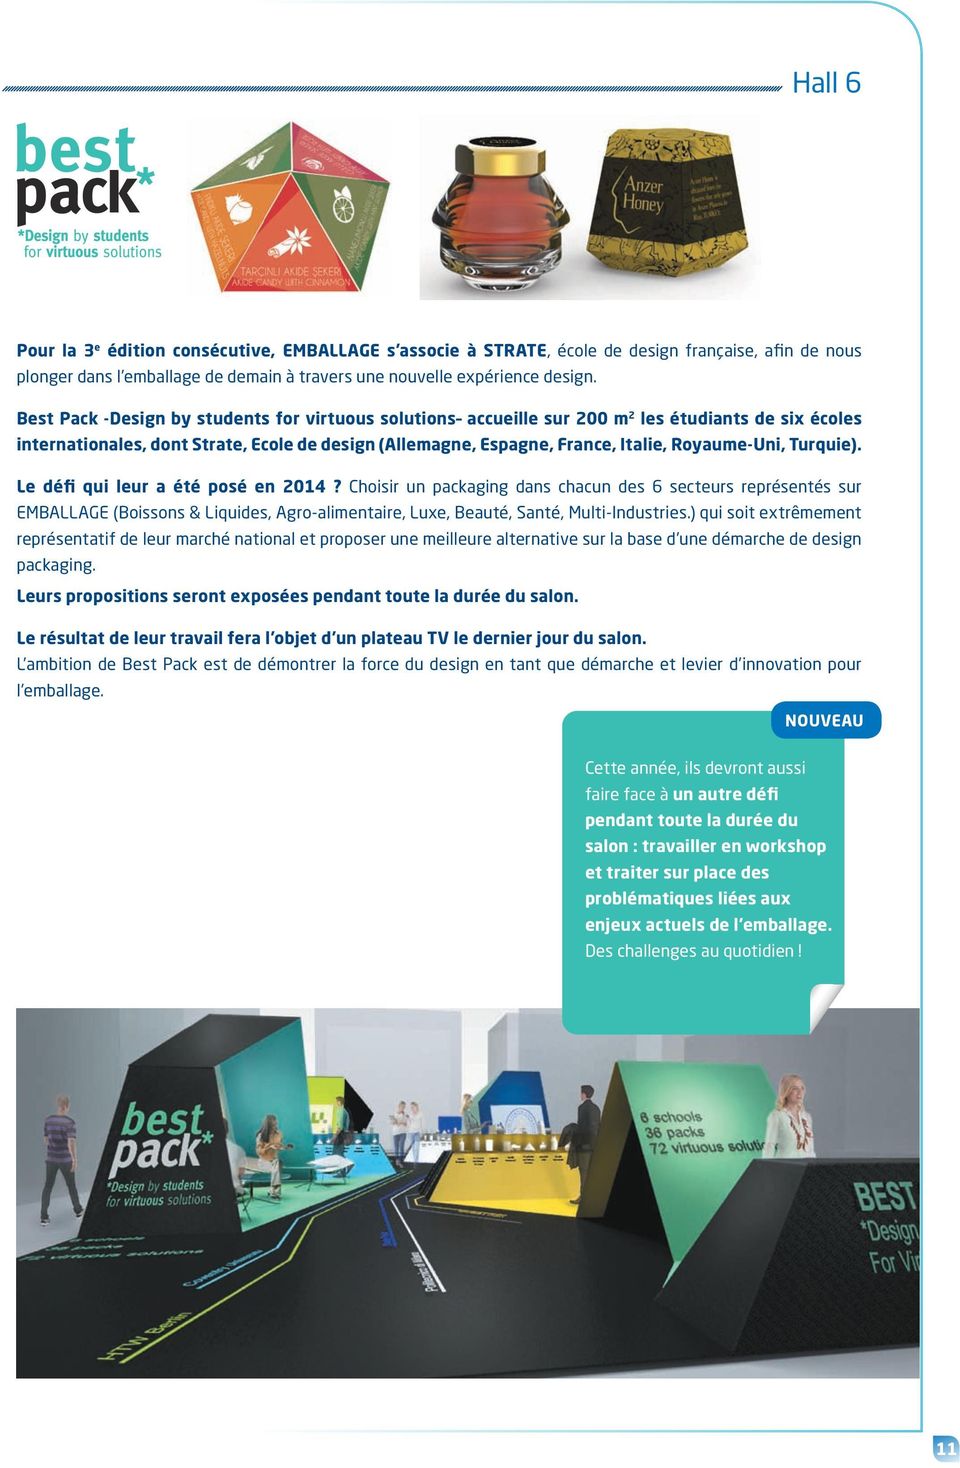 Turquie). Le défi qui leur a été posé en 2014? Choisir un packaging dans chacun des 6 secteurs représentés sur EMBALLAGE (Boissons & Liquides, Agro-alimentaire, Luxe, Beauté, Santé, Multi-Industries.